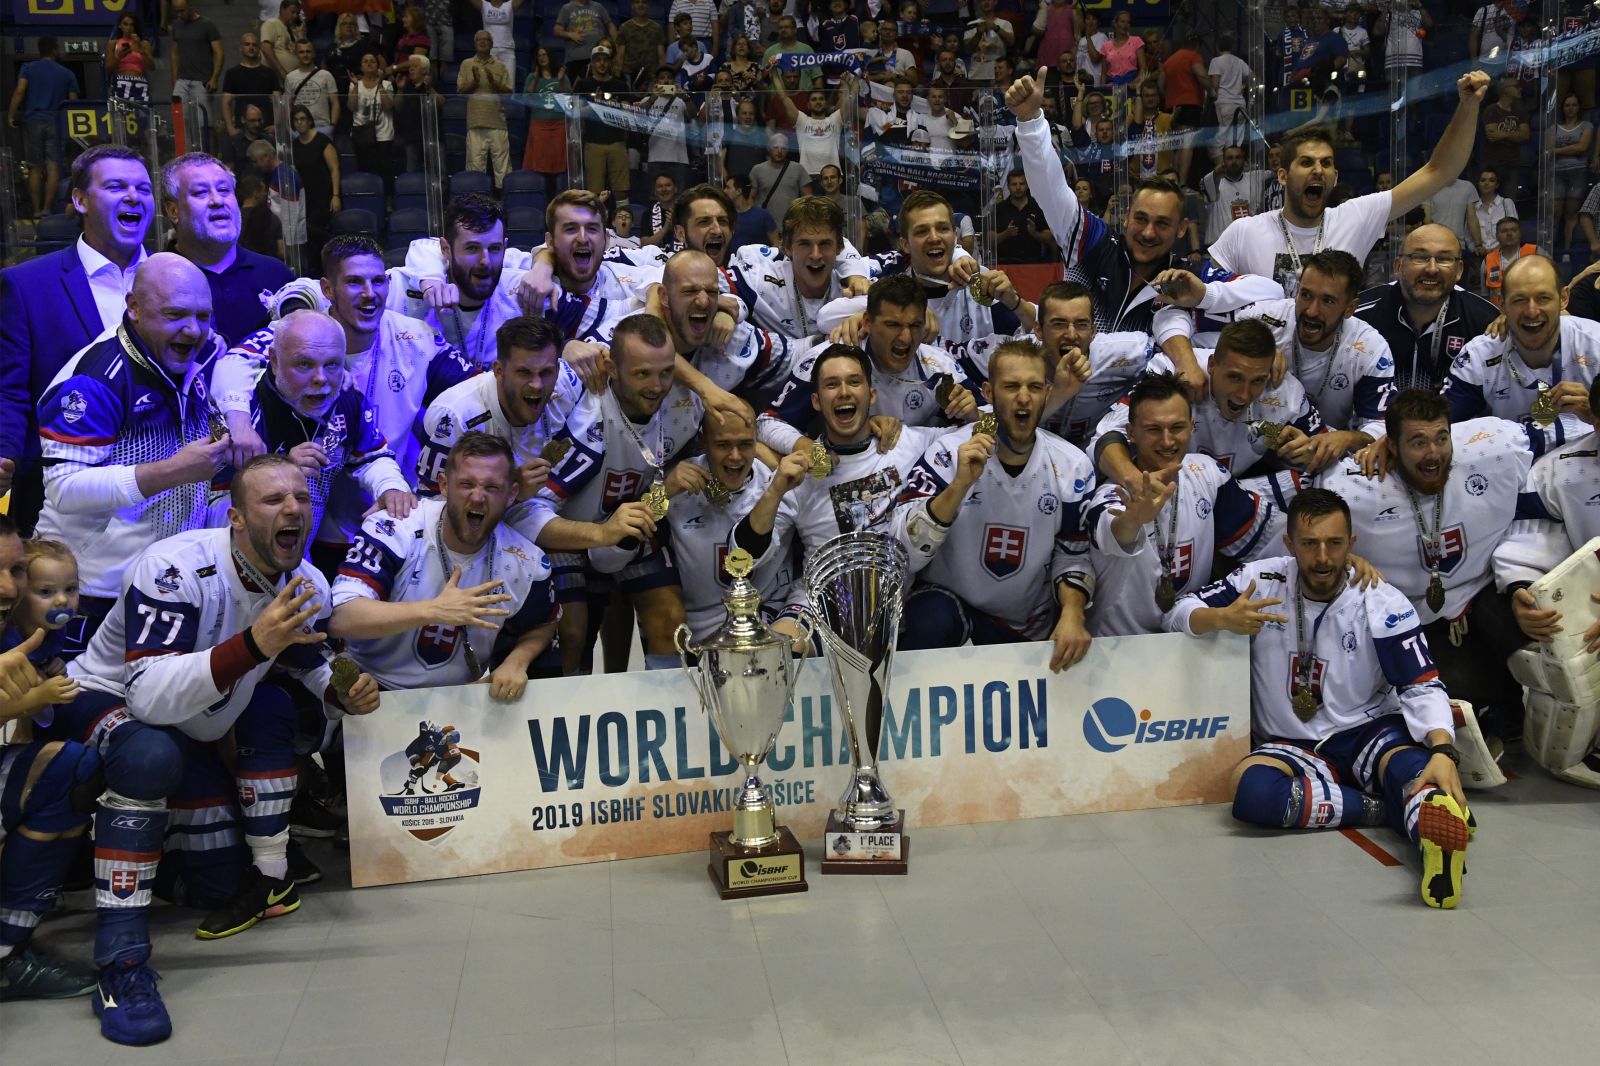 Slovenskí hokejbalisti sú majstri sveta! Titul šampióna získali už štvrtýkrát v rade